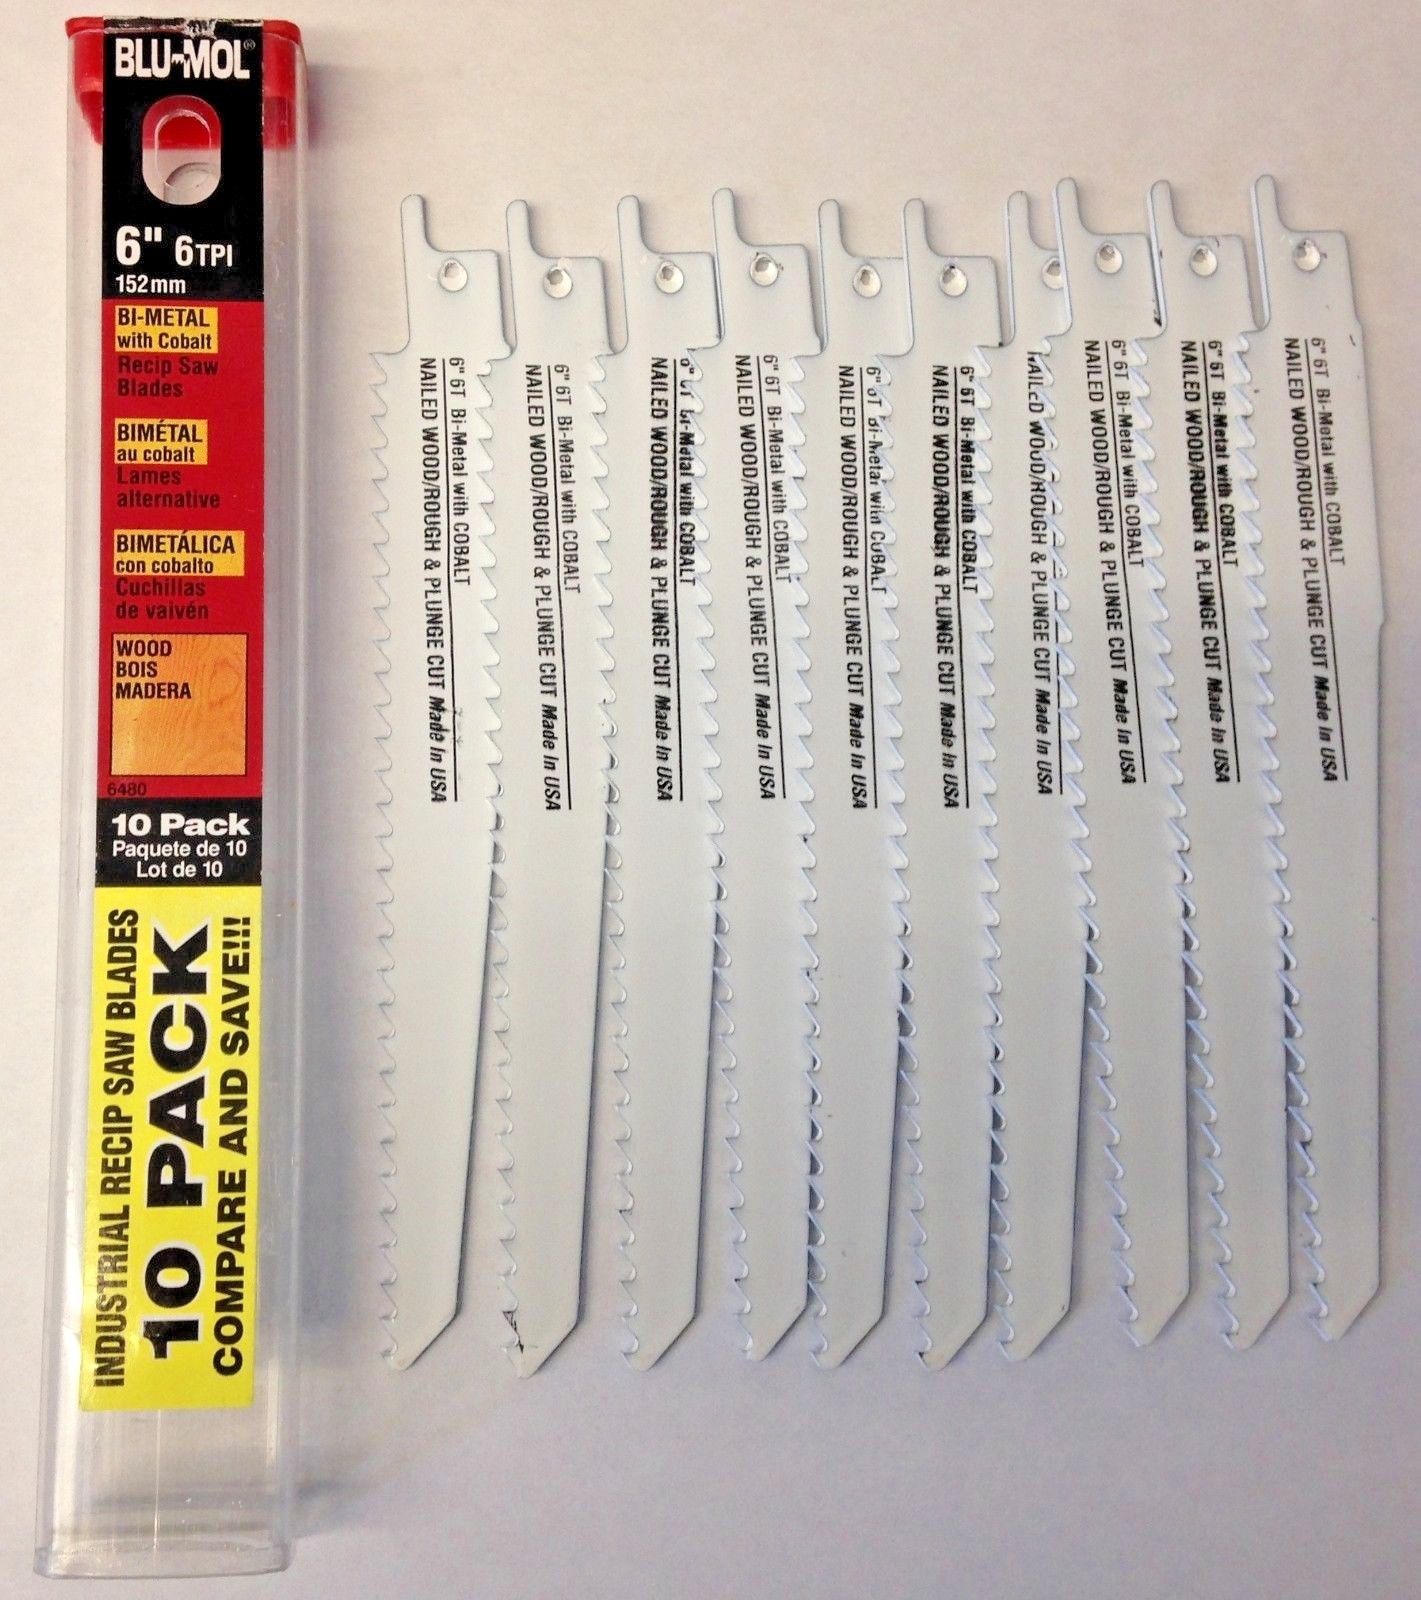 Blu Mol 6480 6" x 6 TPI Bi-Metal Reciprocating Saw Blades 10 Pack USA